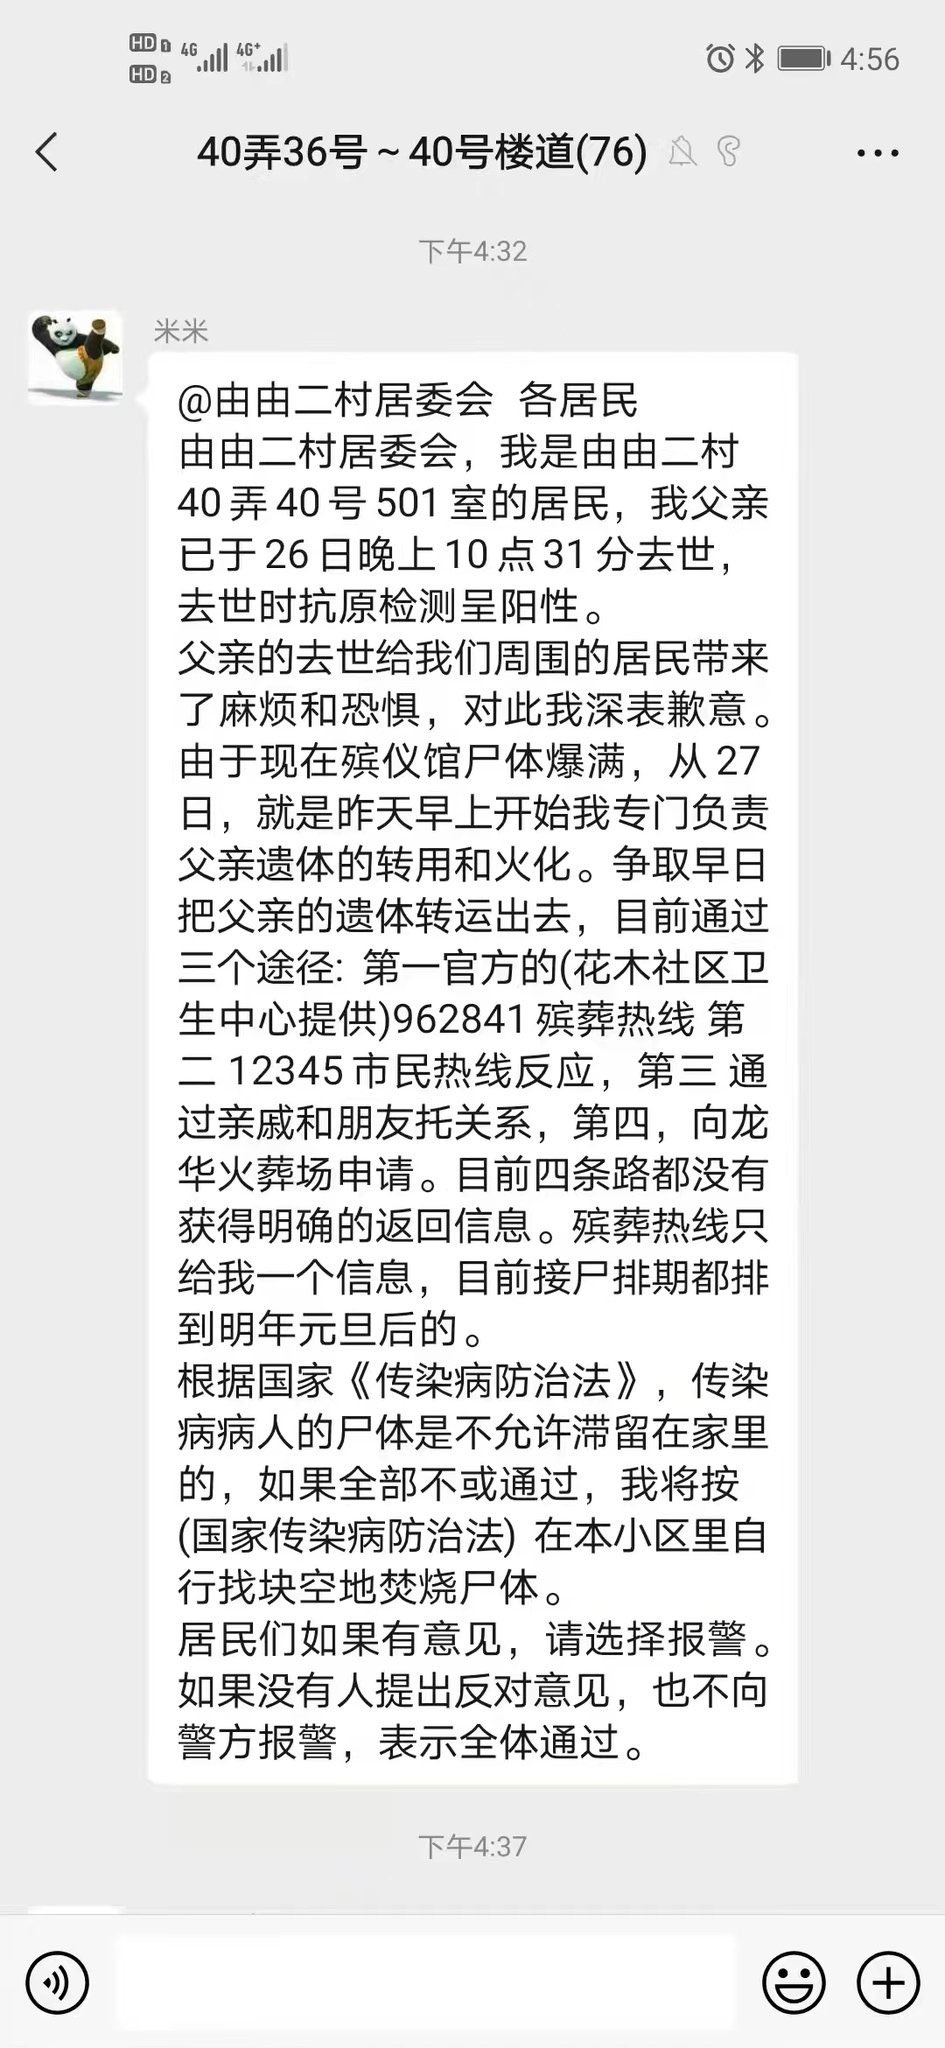 [新聞] 上海居民宣告在小區燒屍 當街點火影片頻傳